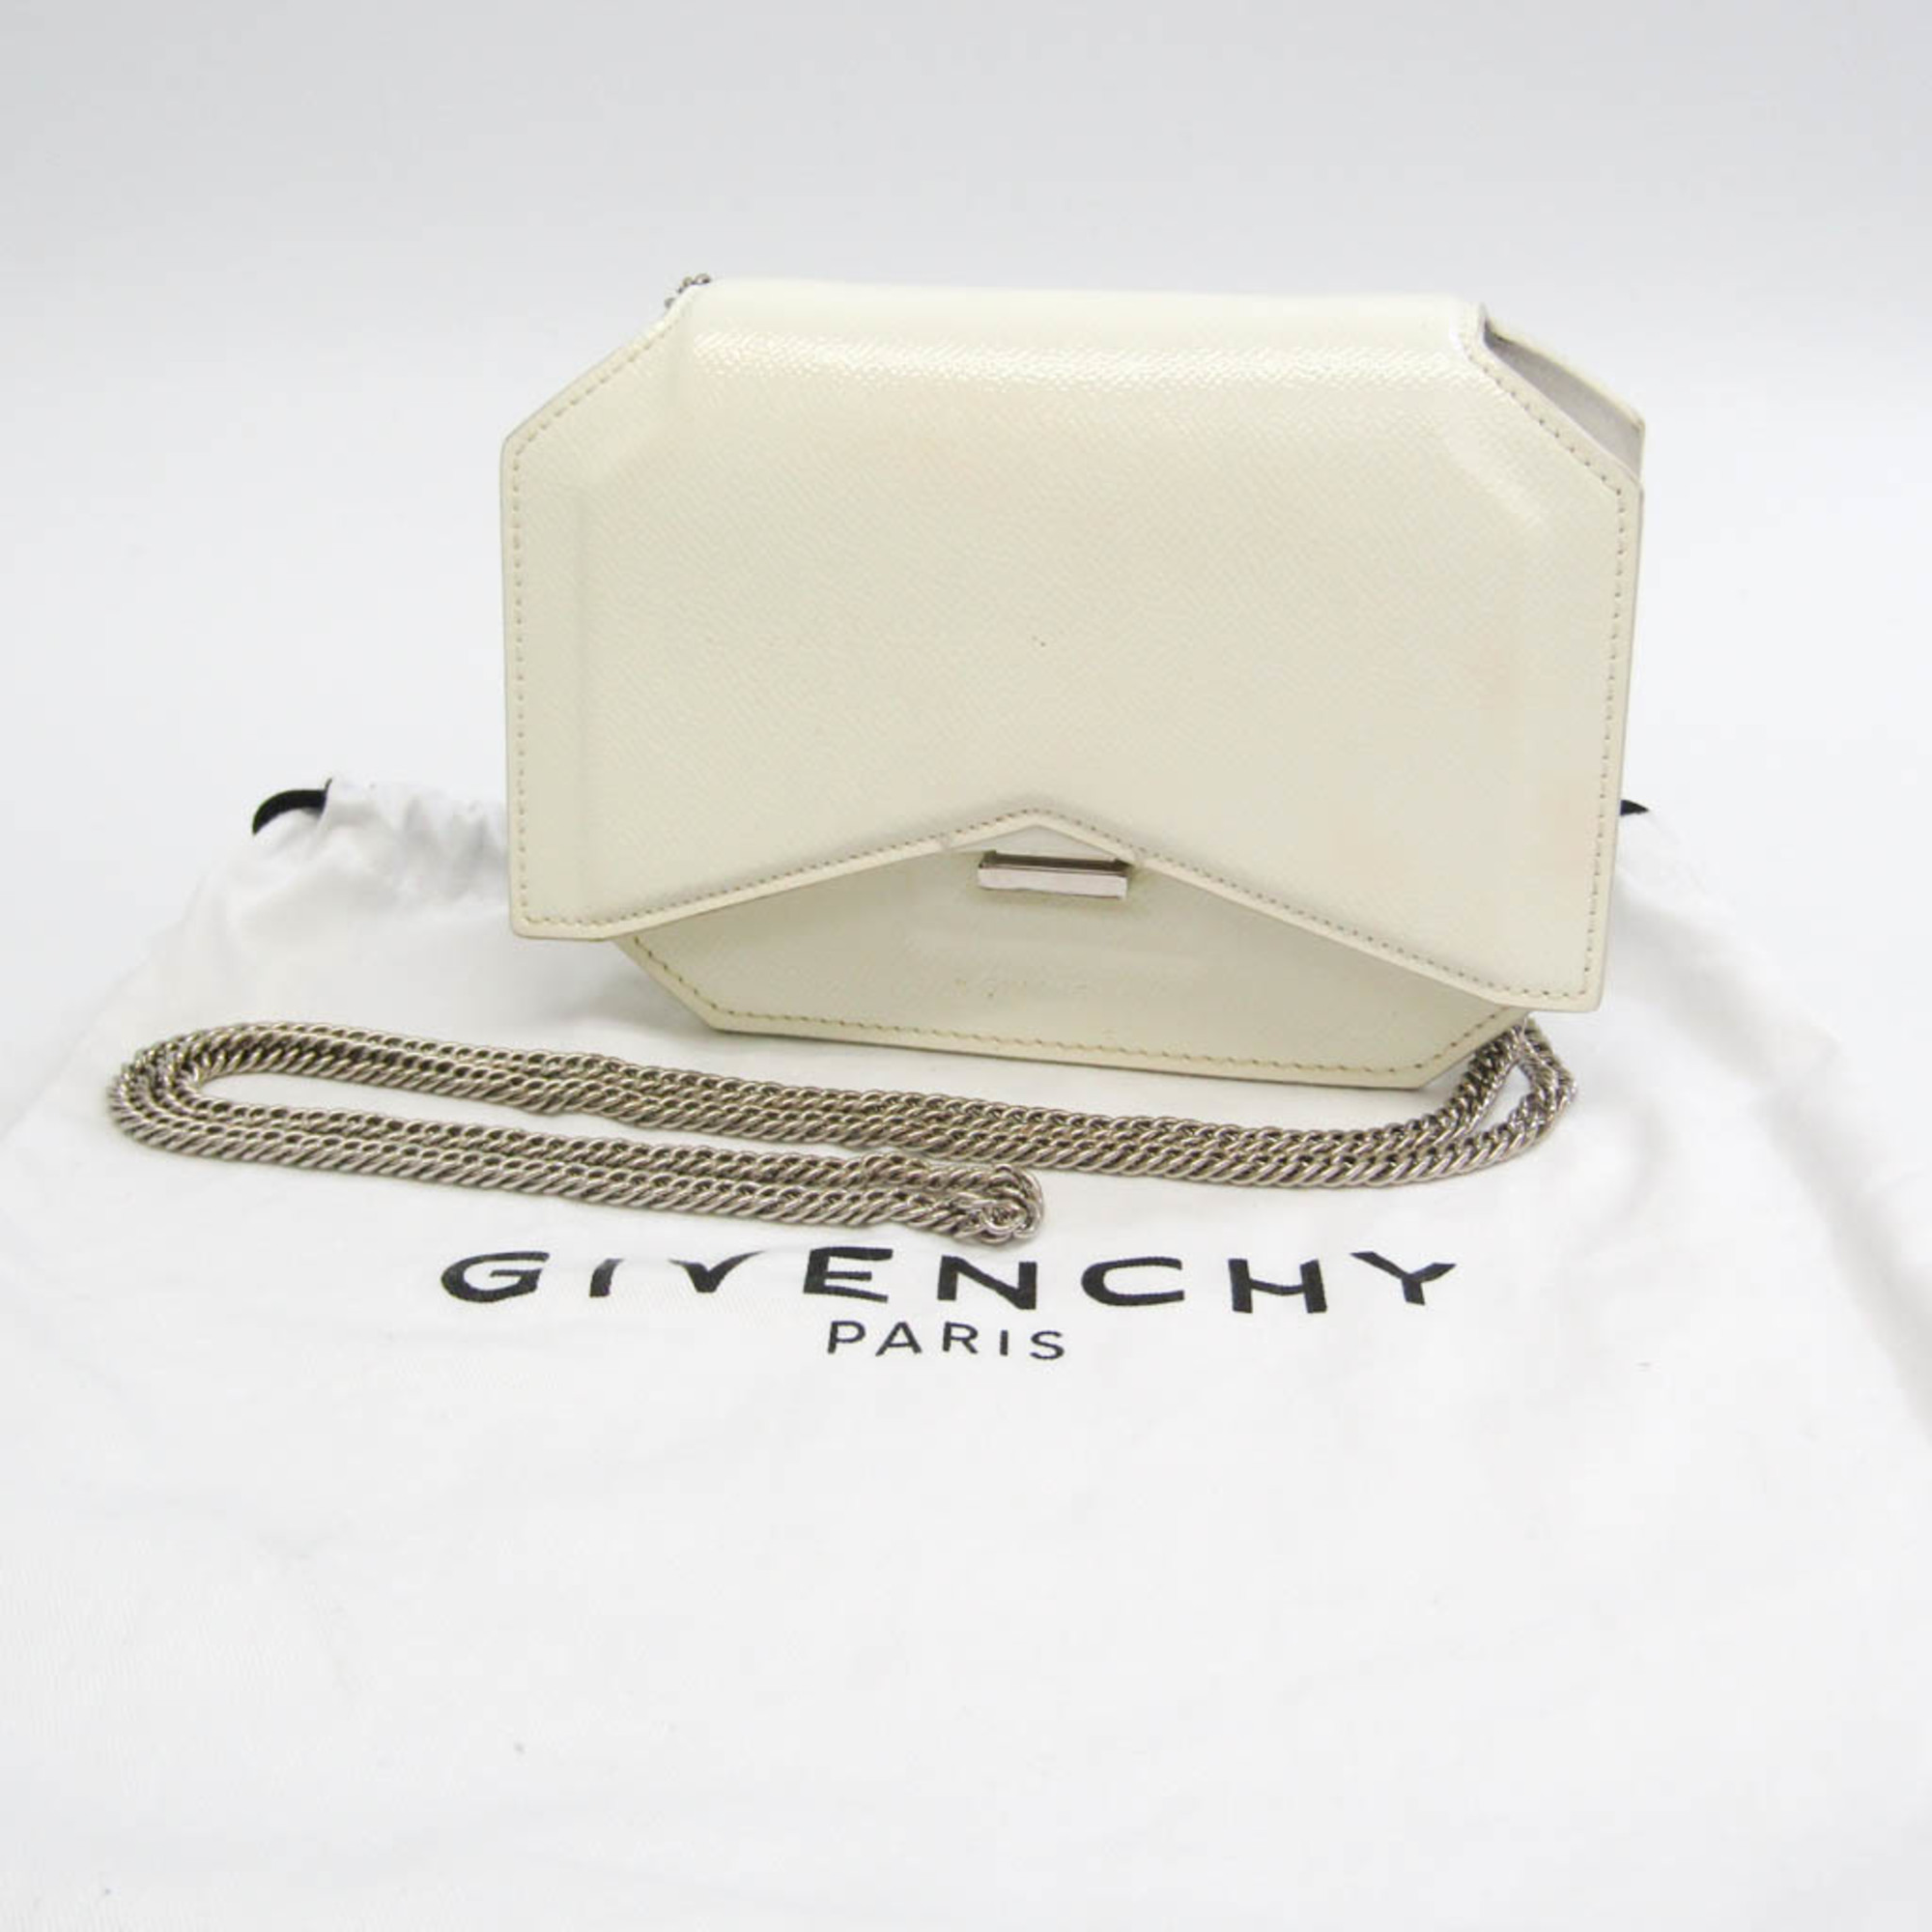 ジバンシィ(Givenchy) ボウカット レディース レザー ショルダーバッグ オフホワイト